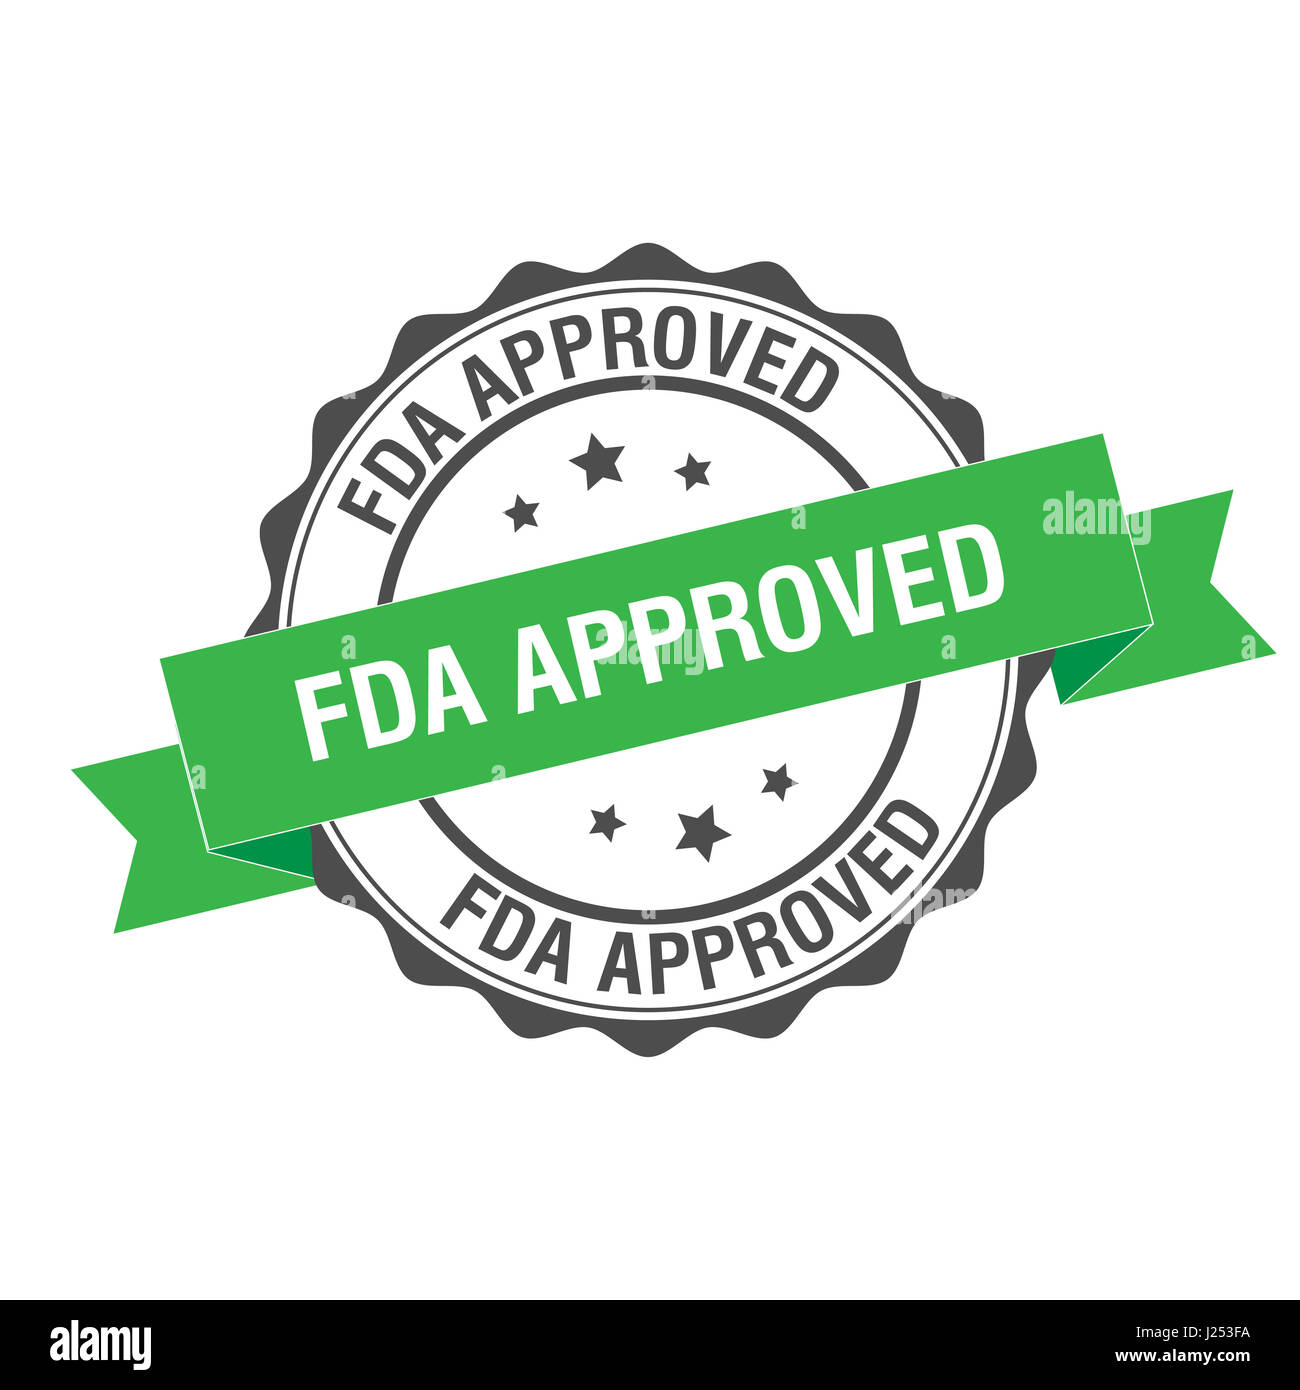 La FDA aprobó la ilustración del sello Foto de stock